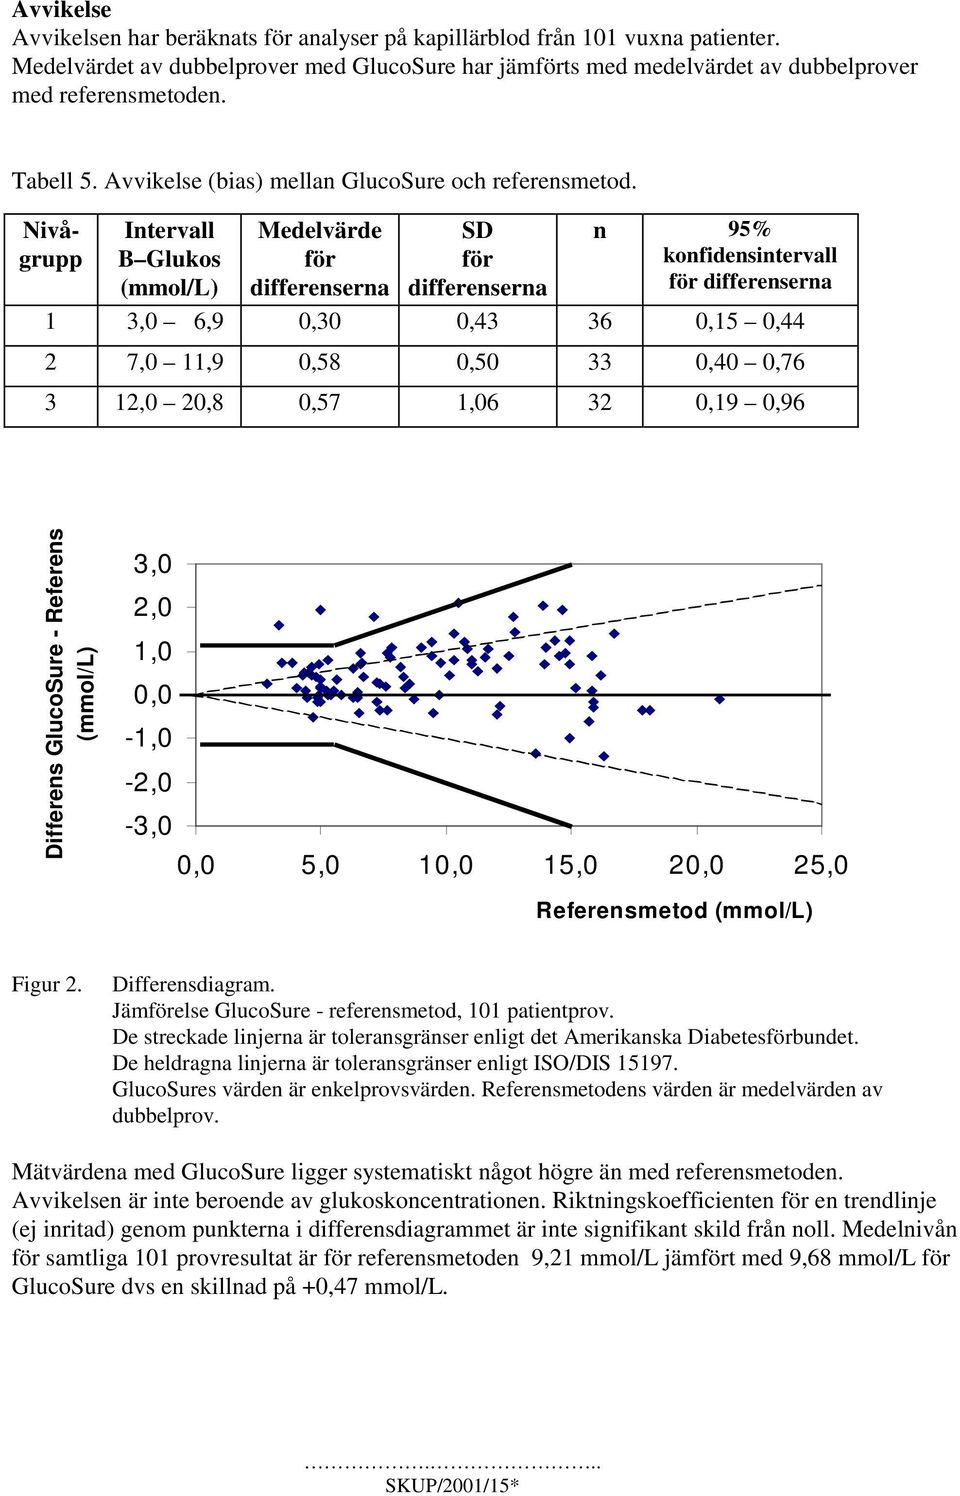 Nivågrupp Intervall B Glukos (mmol/l) Medelvärde för differenserna SD för differenserna n 95% konfidensintervall för differenserna 1 3,0 6,9 0,30 0,43 36 0,15 0,44 2 7,0 11,9 0,58 0,50 33 0,40 0,76 3